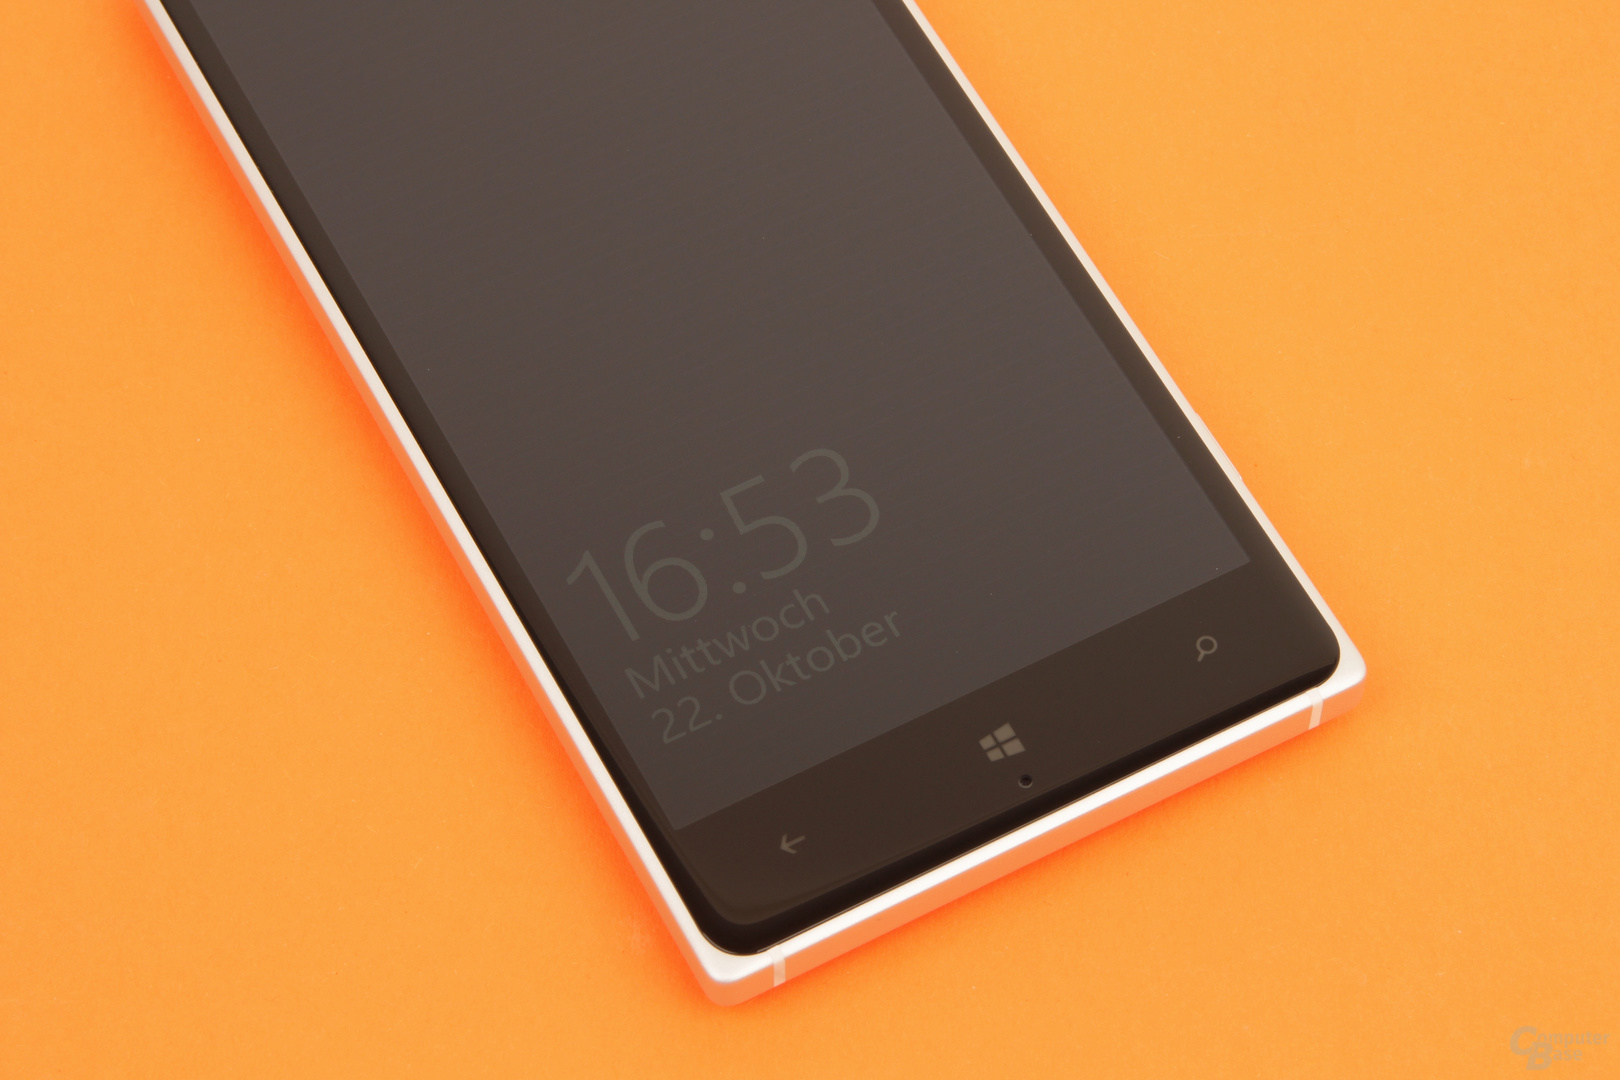 Das Nokia Lumia 830 unterstützt Glance Screen